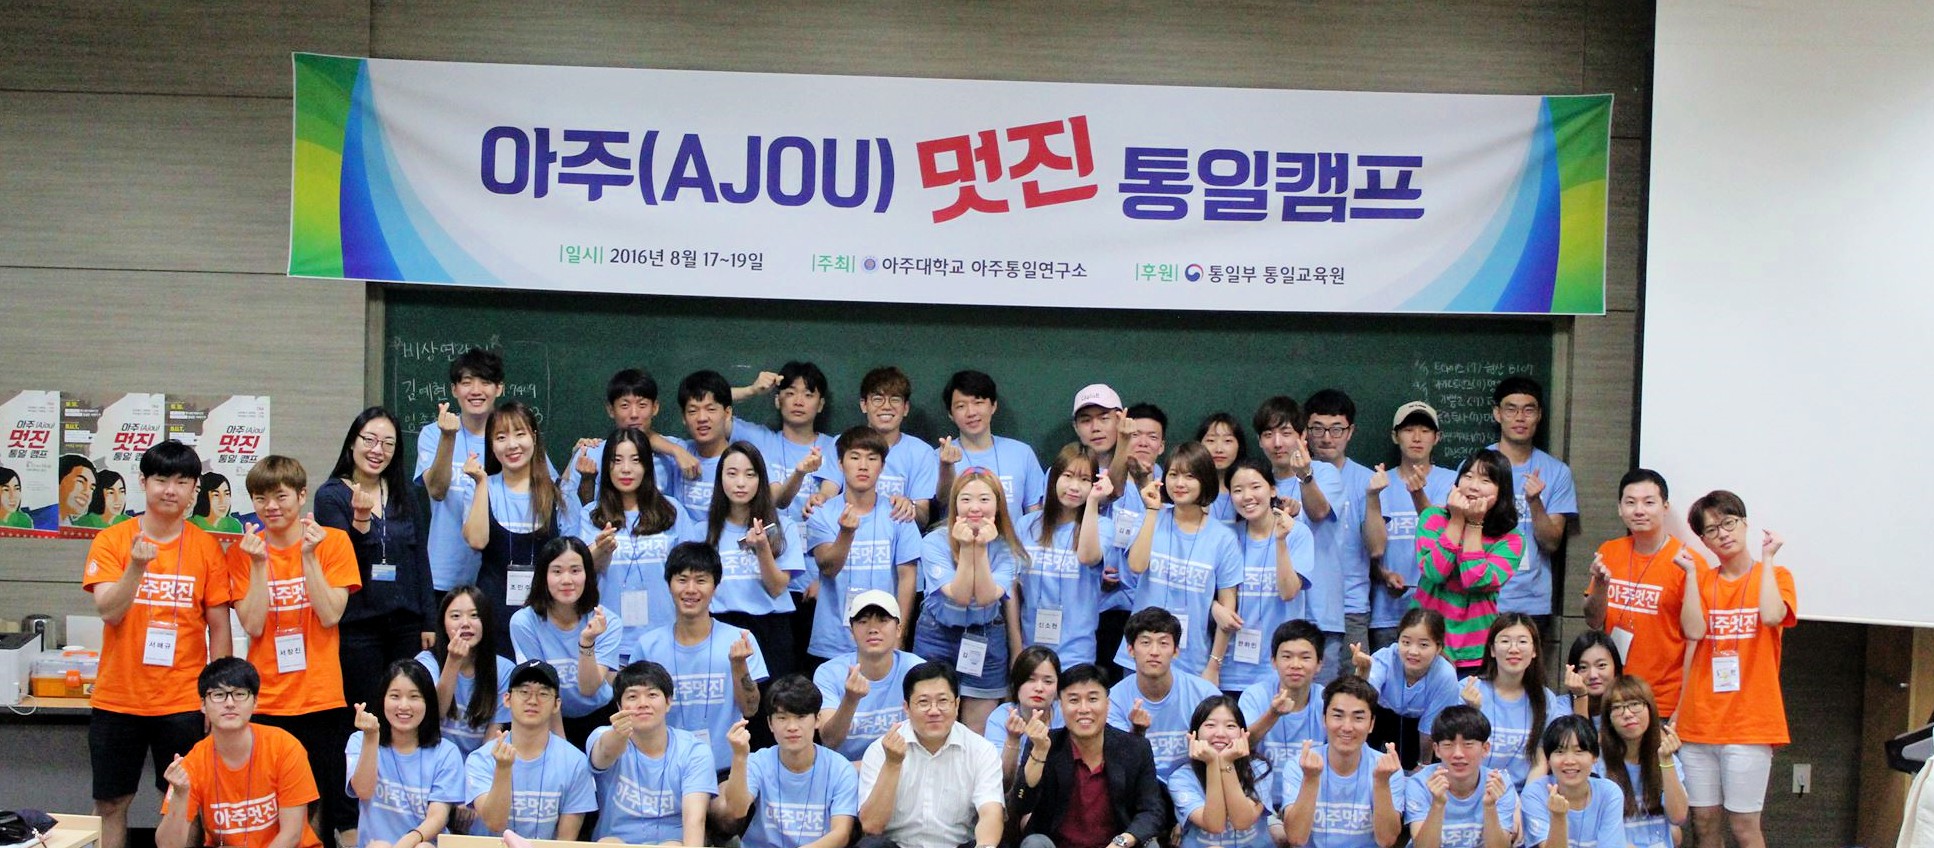 [16.08.29] 아주통일연구소, 남북 대학생 함께한 ‘아주 멋진 통일캠프’